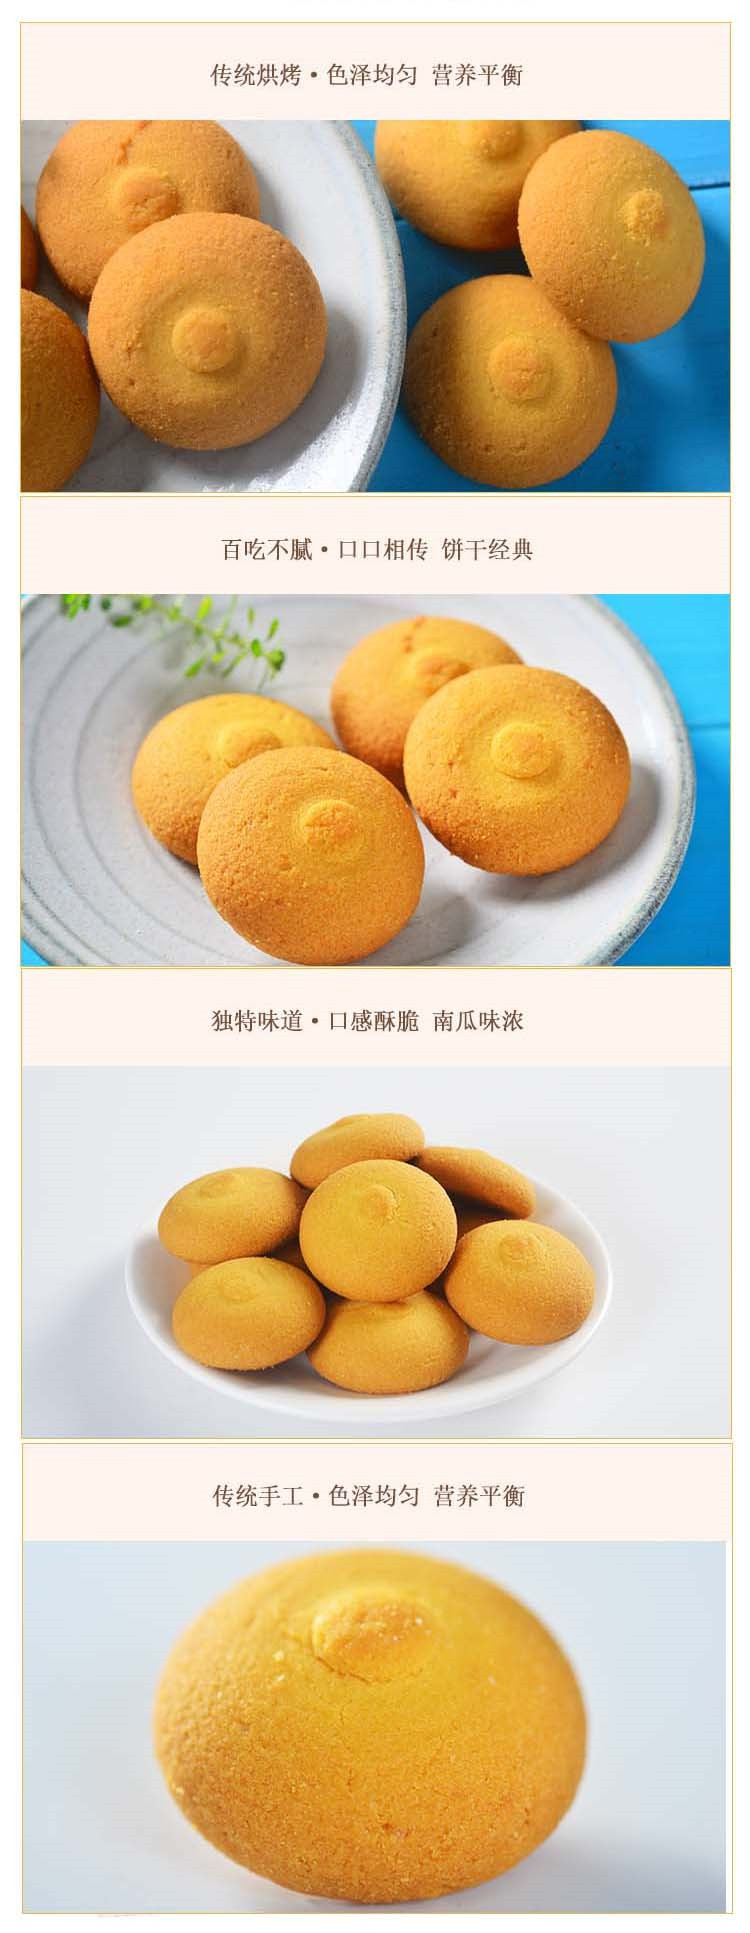 海南海口馆  黄金食品  南瓜饼